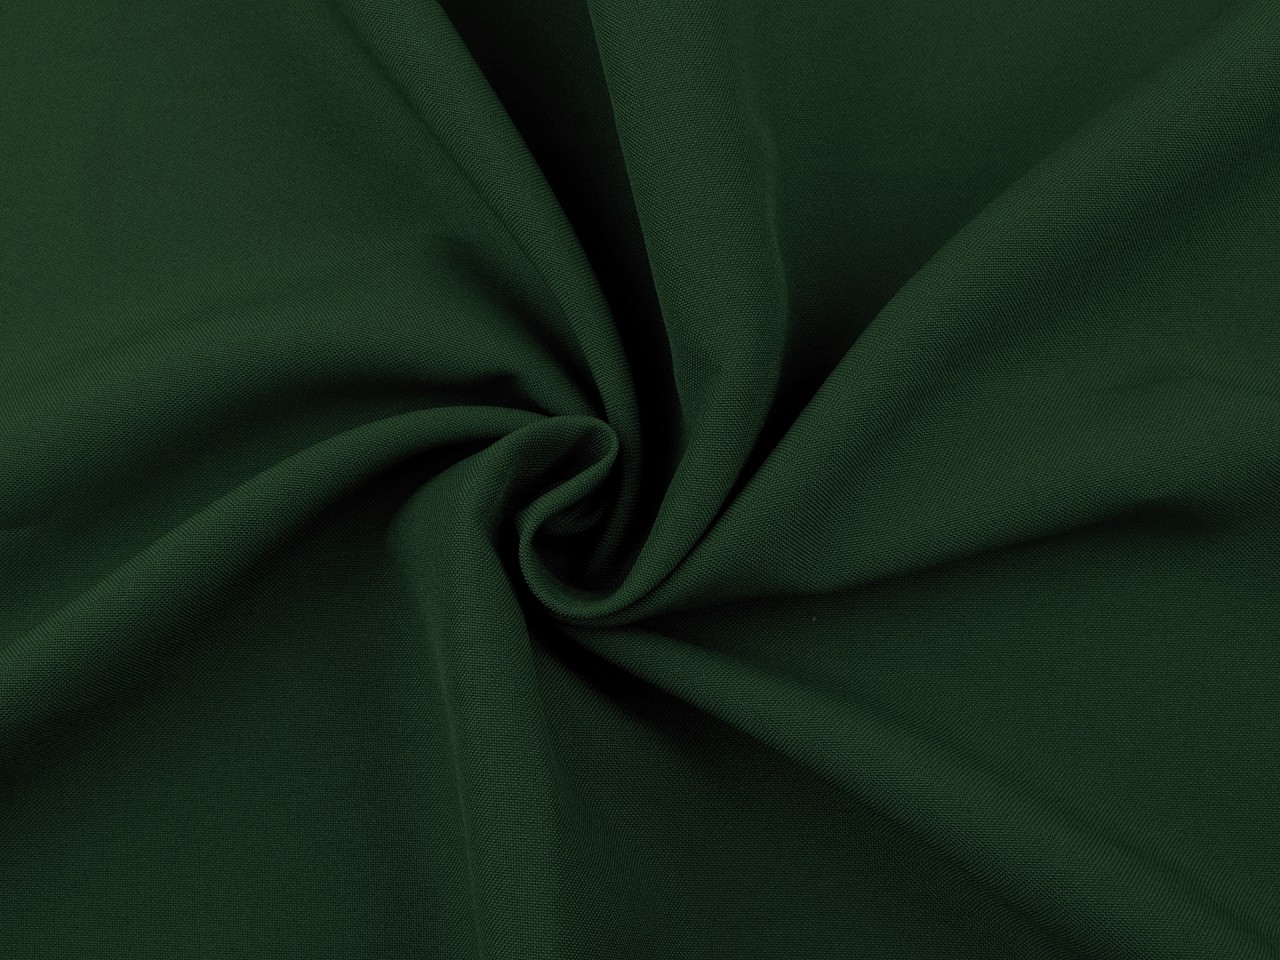 Polyesterová látka Rongo, barva 8 (7) zelená tmavá